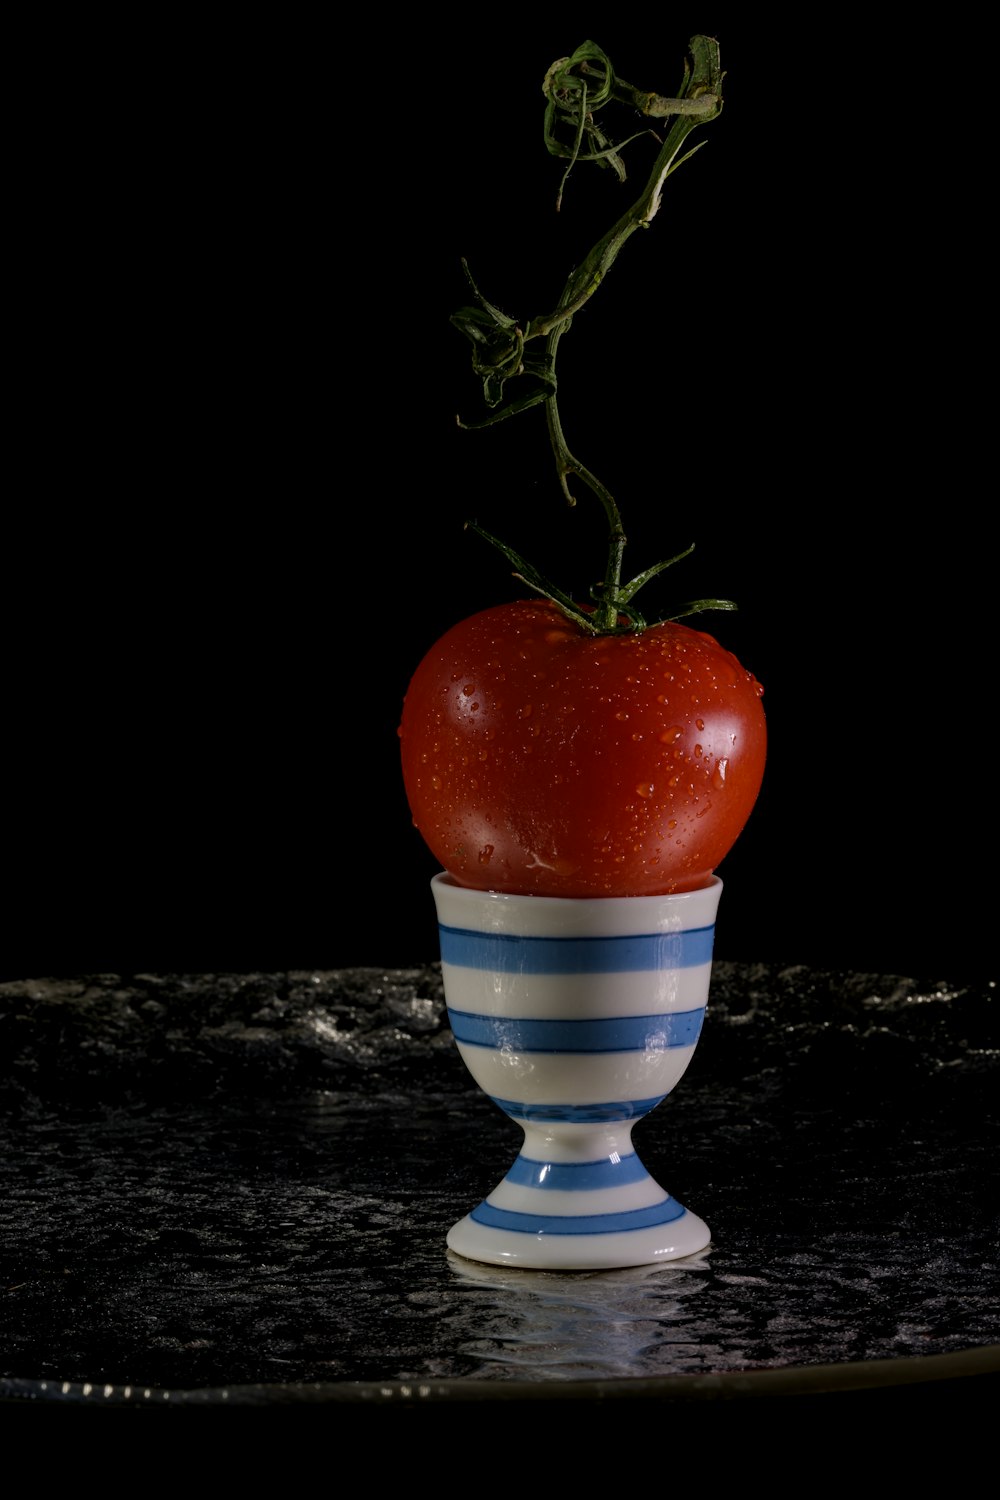 une pomme rouge sur une tasse rayée bleue et blanche